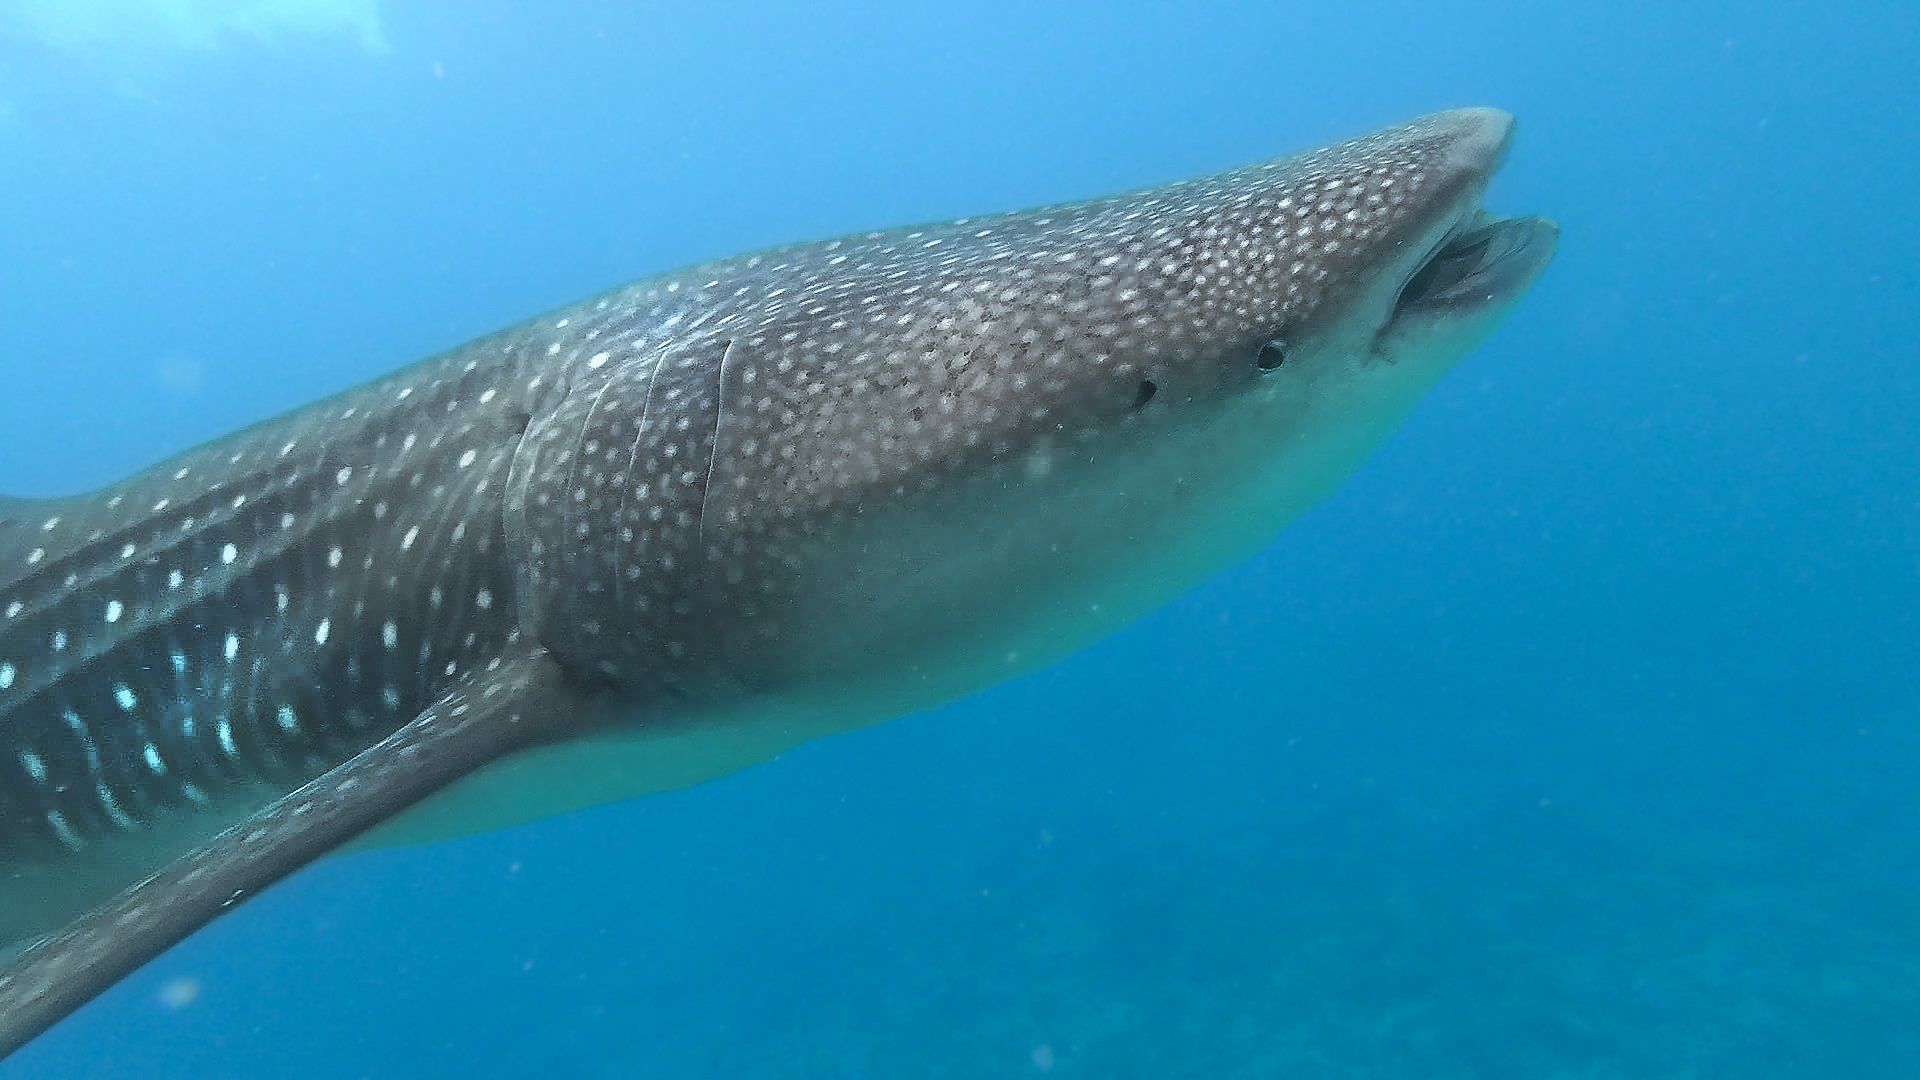 Nuotare con squalo balena Maldive